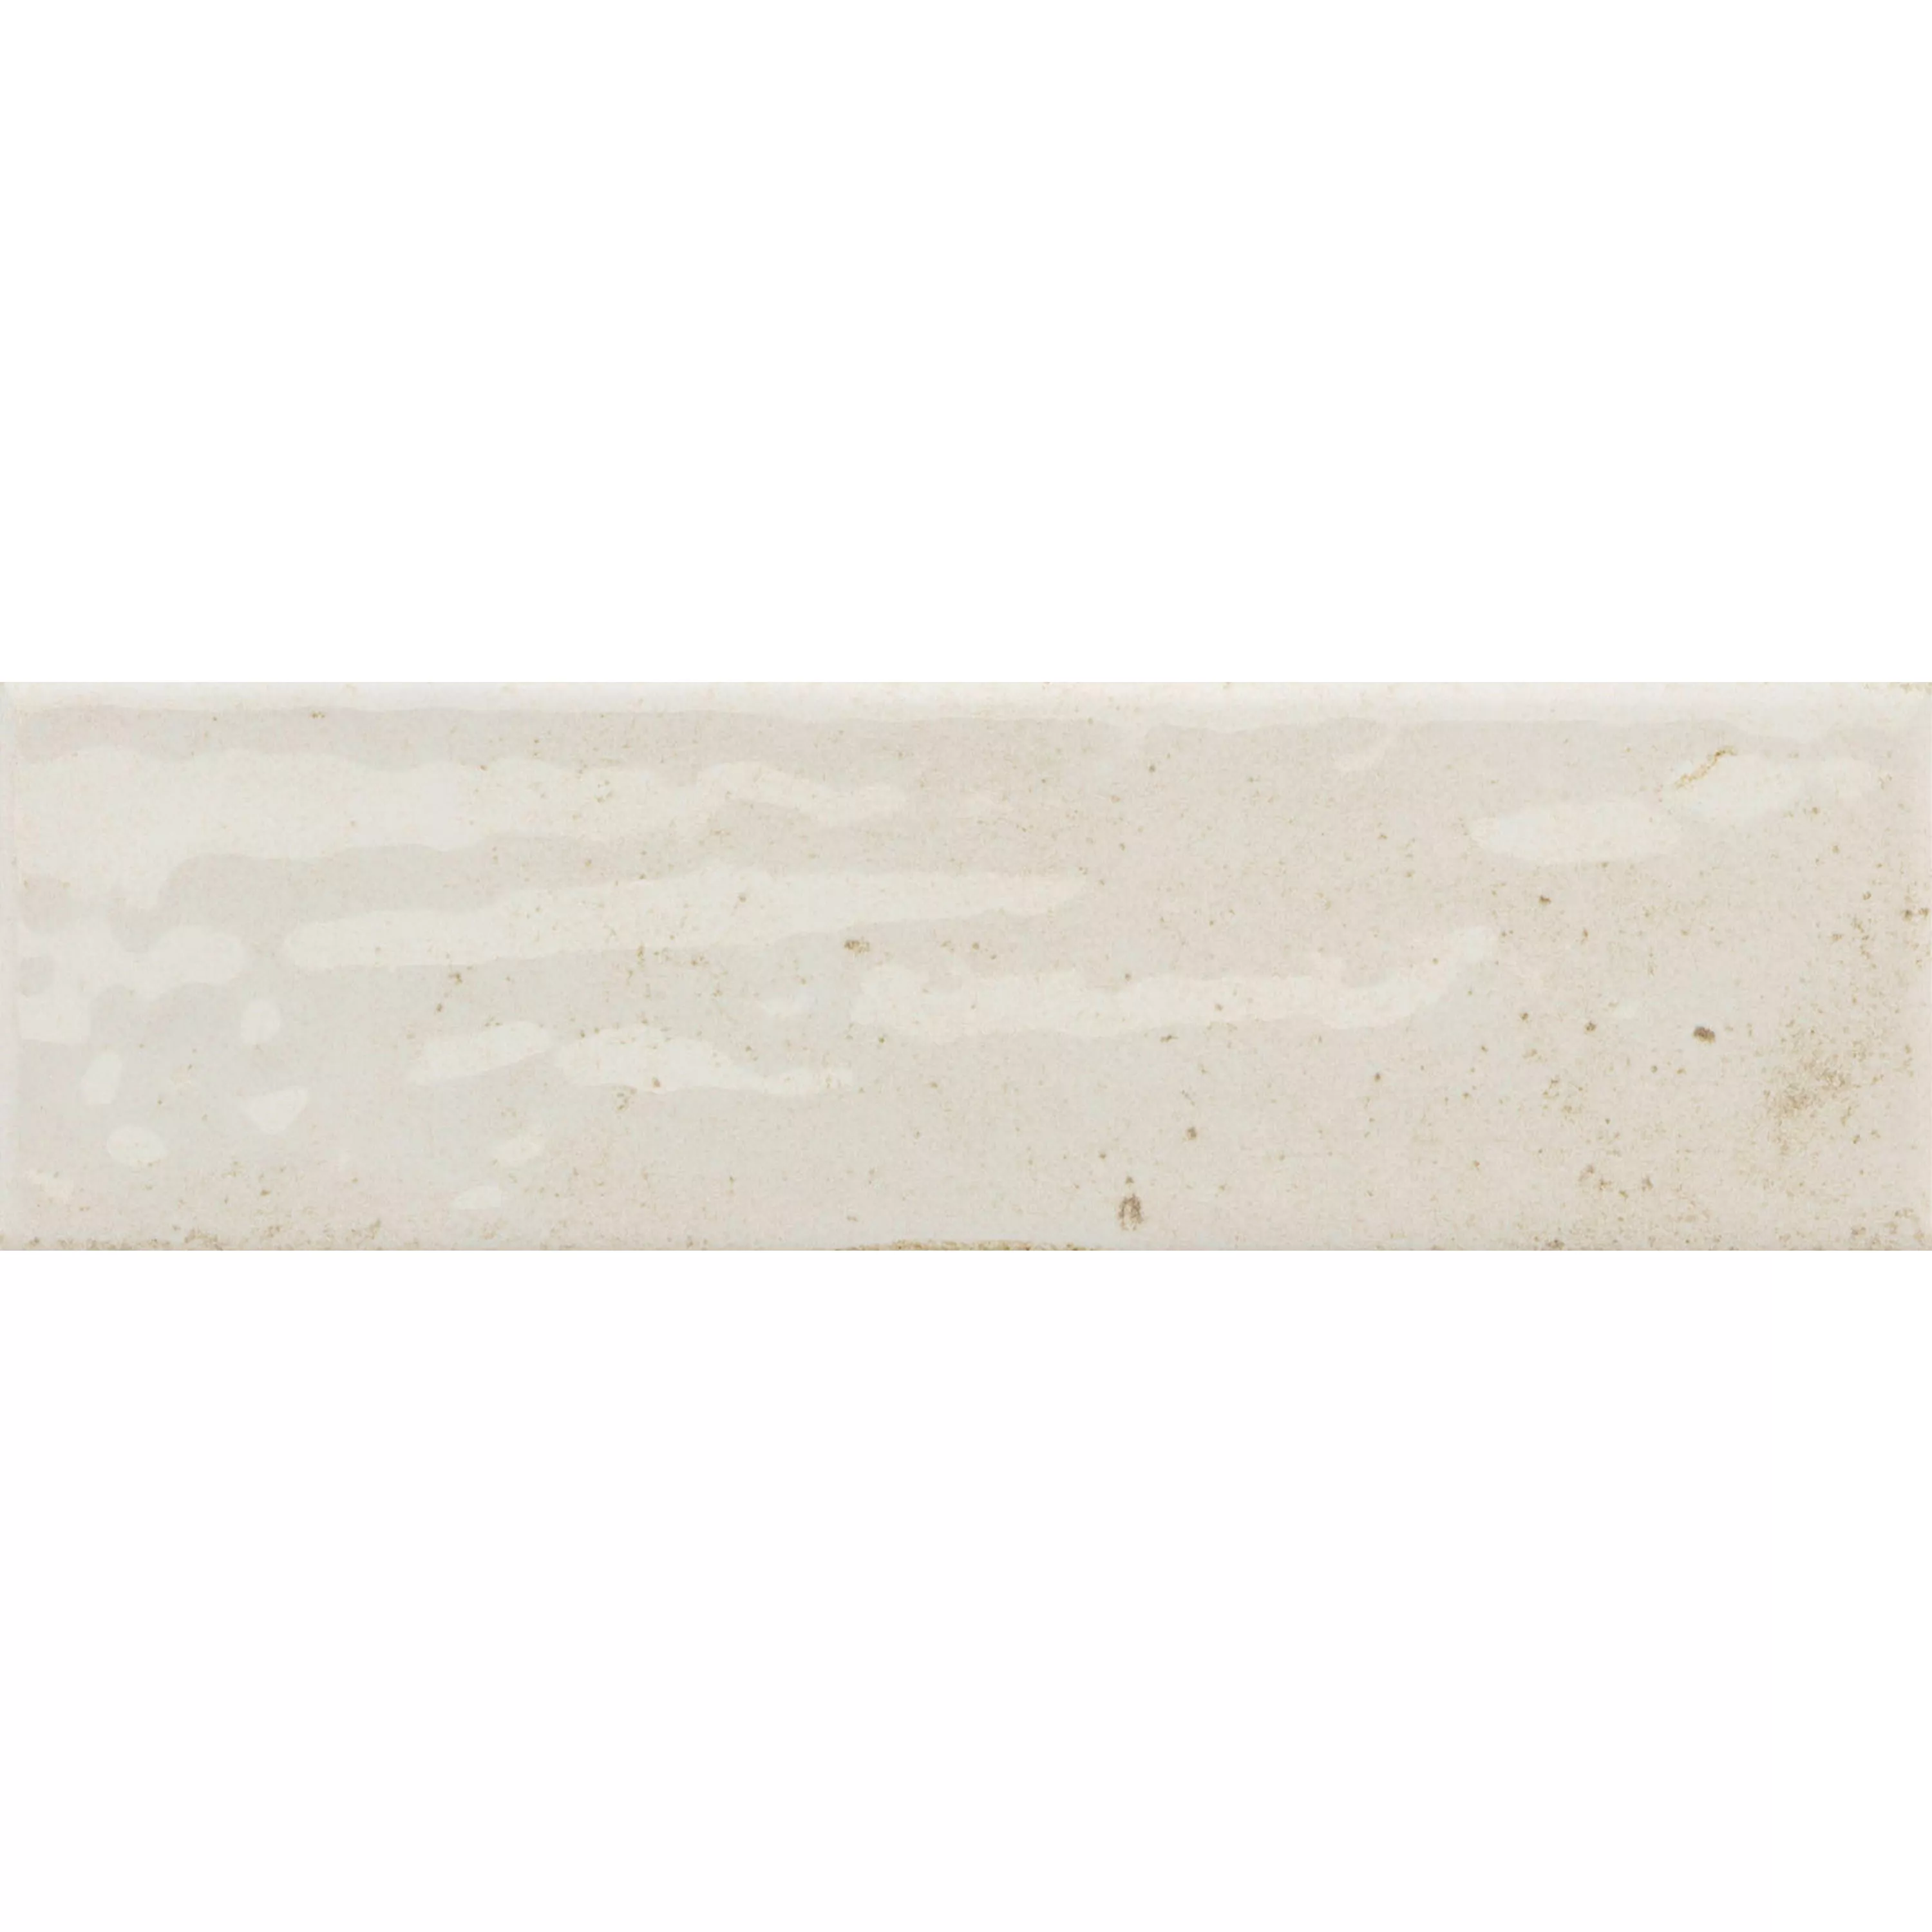 Sample Wall Tiles Arosa Glossy Waved Blanc 6x25cm